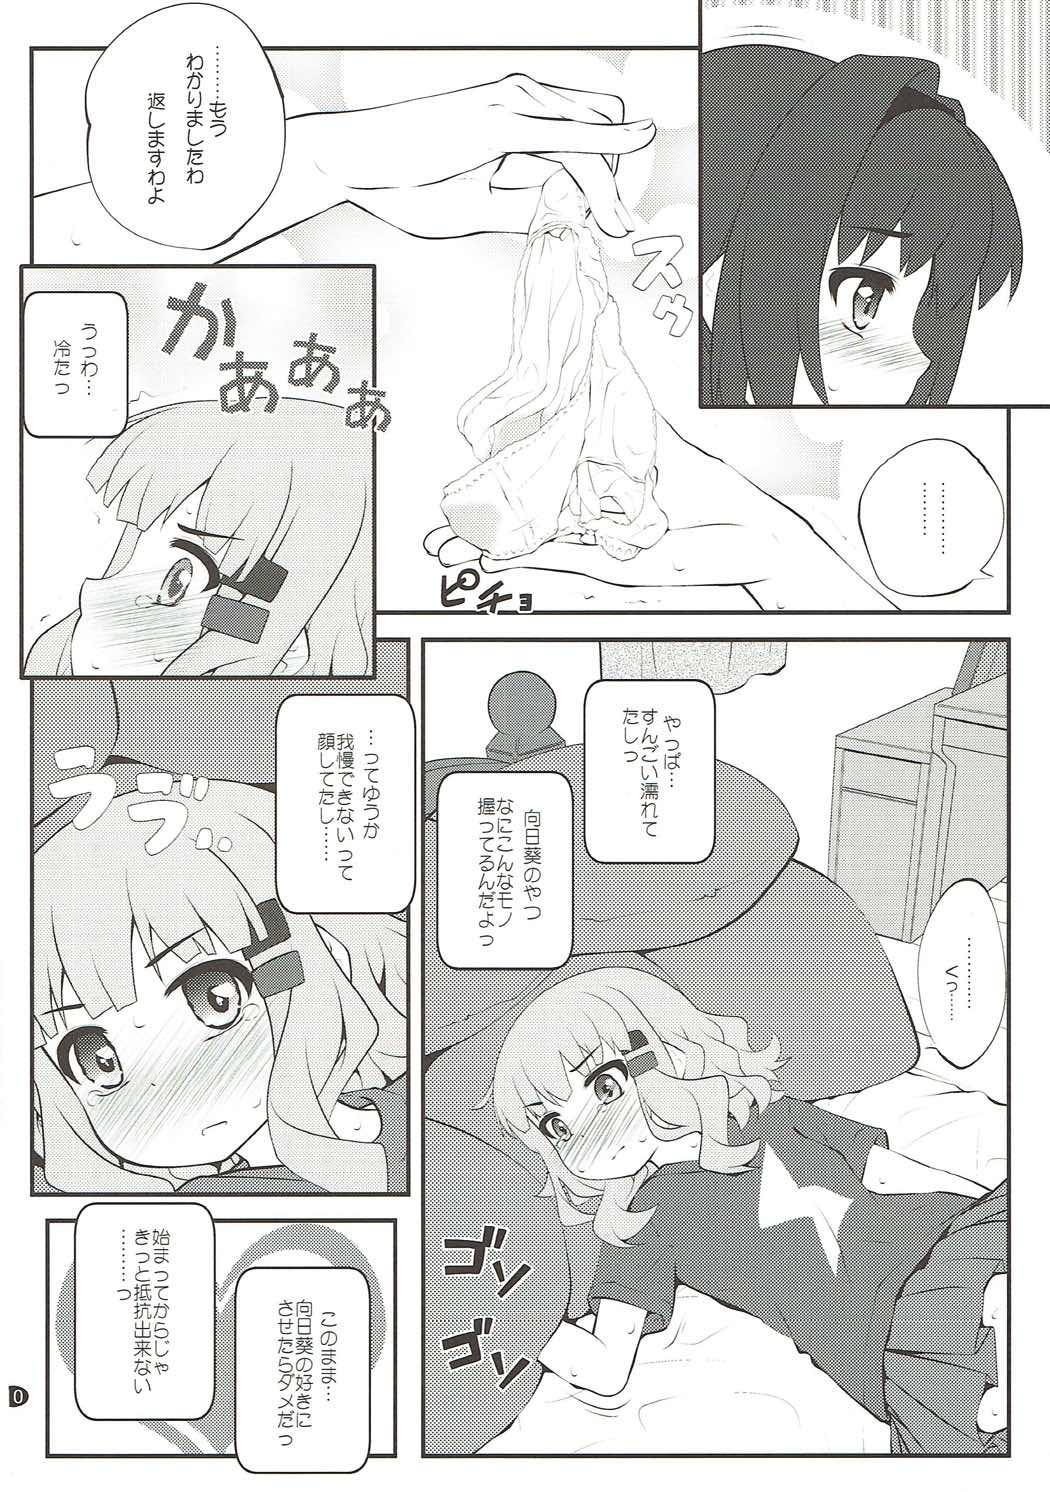 Gaybukkake Himegoto Flowers 12 - Yuruyuri People Having Sex - Page 9